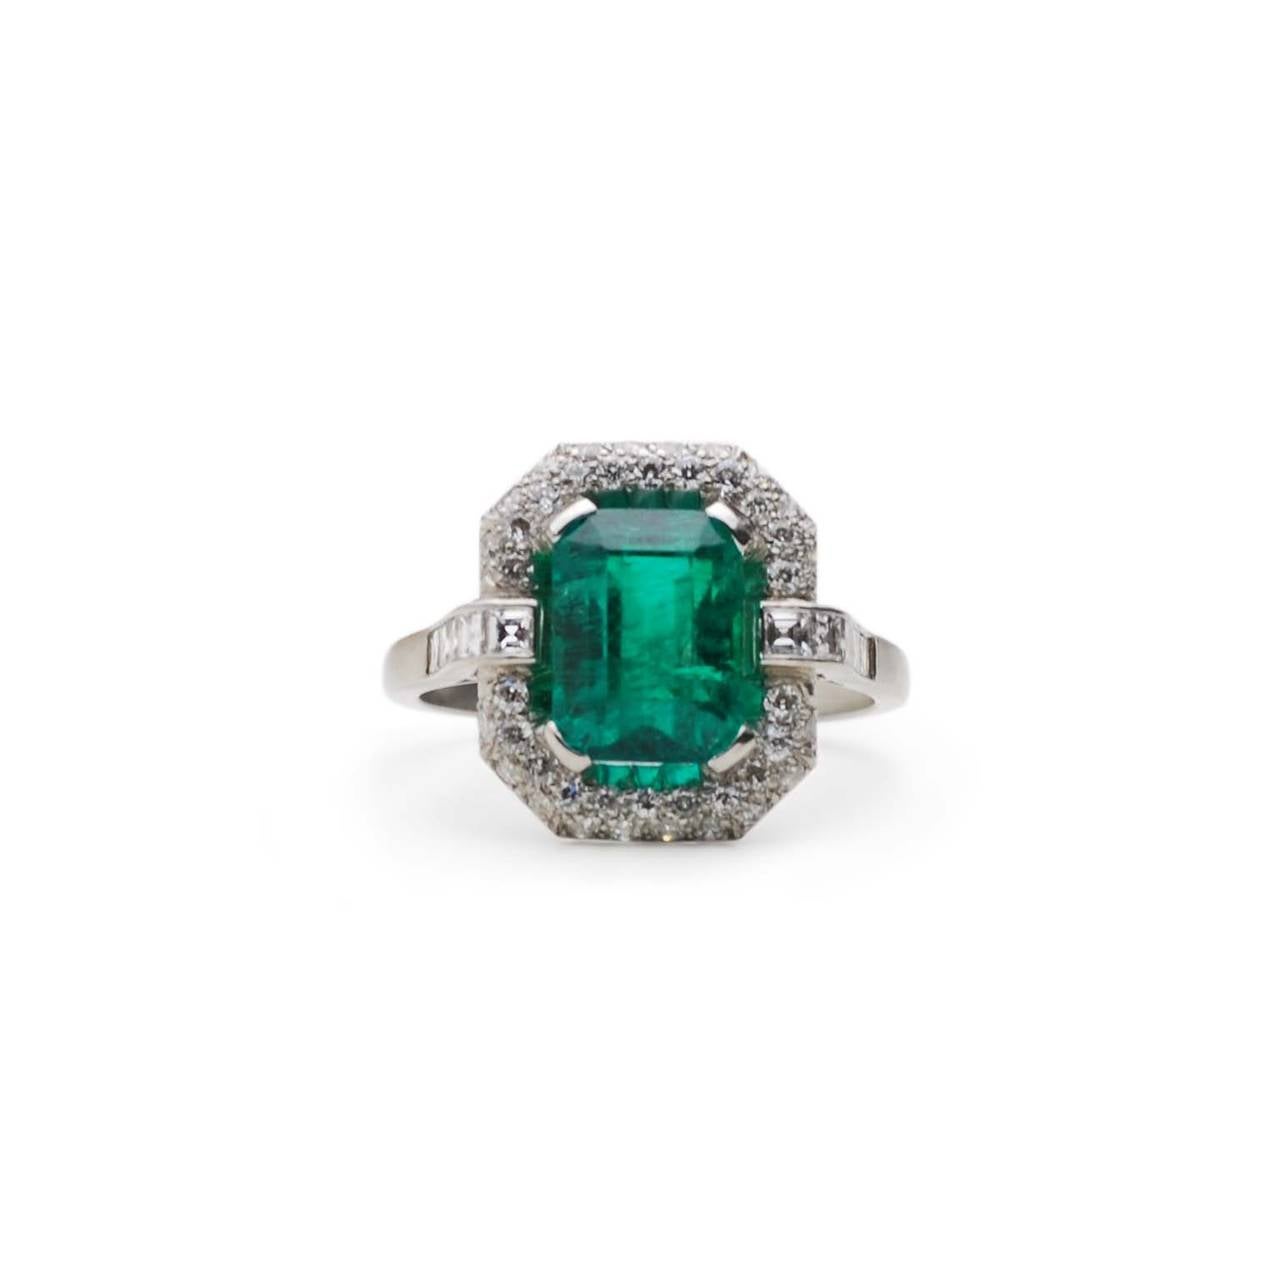 Platinum Art Deco Diamond & Emerald Ring

Estimated diamond weight: 1.00ct
Estimated Columbian Emerald (no oil) weight: 3.12ct

Columbian Emerald comes with cert.